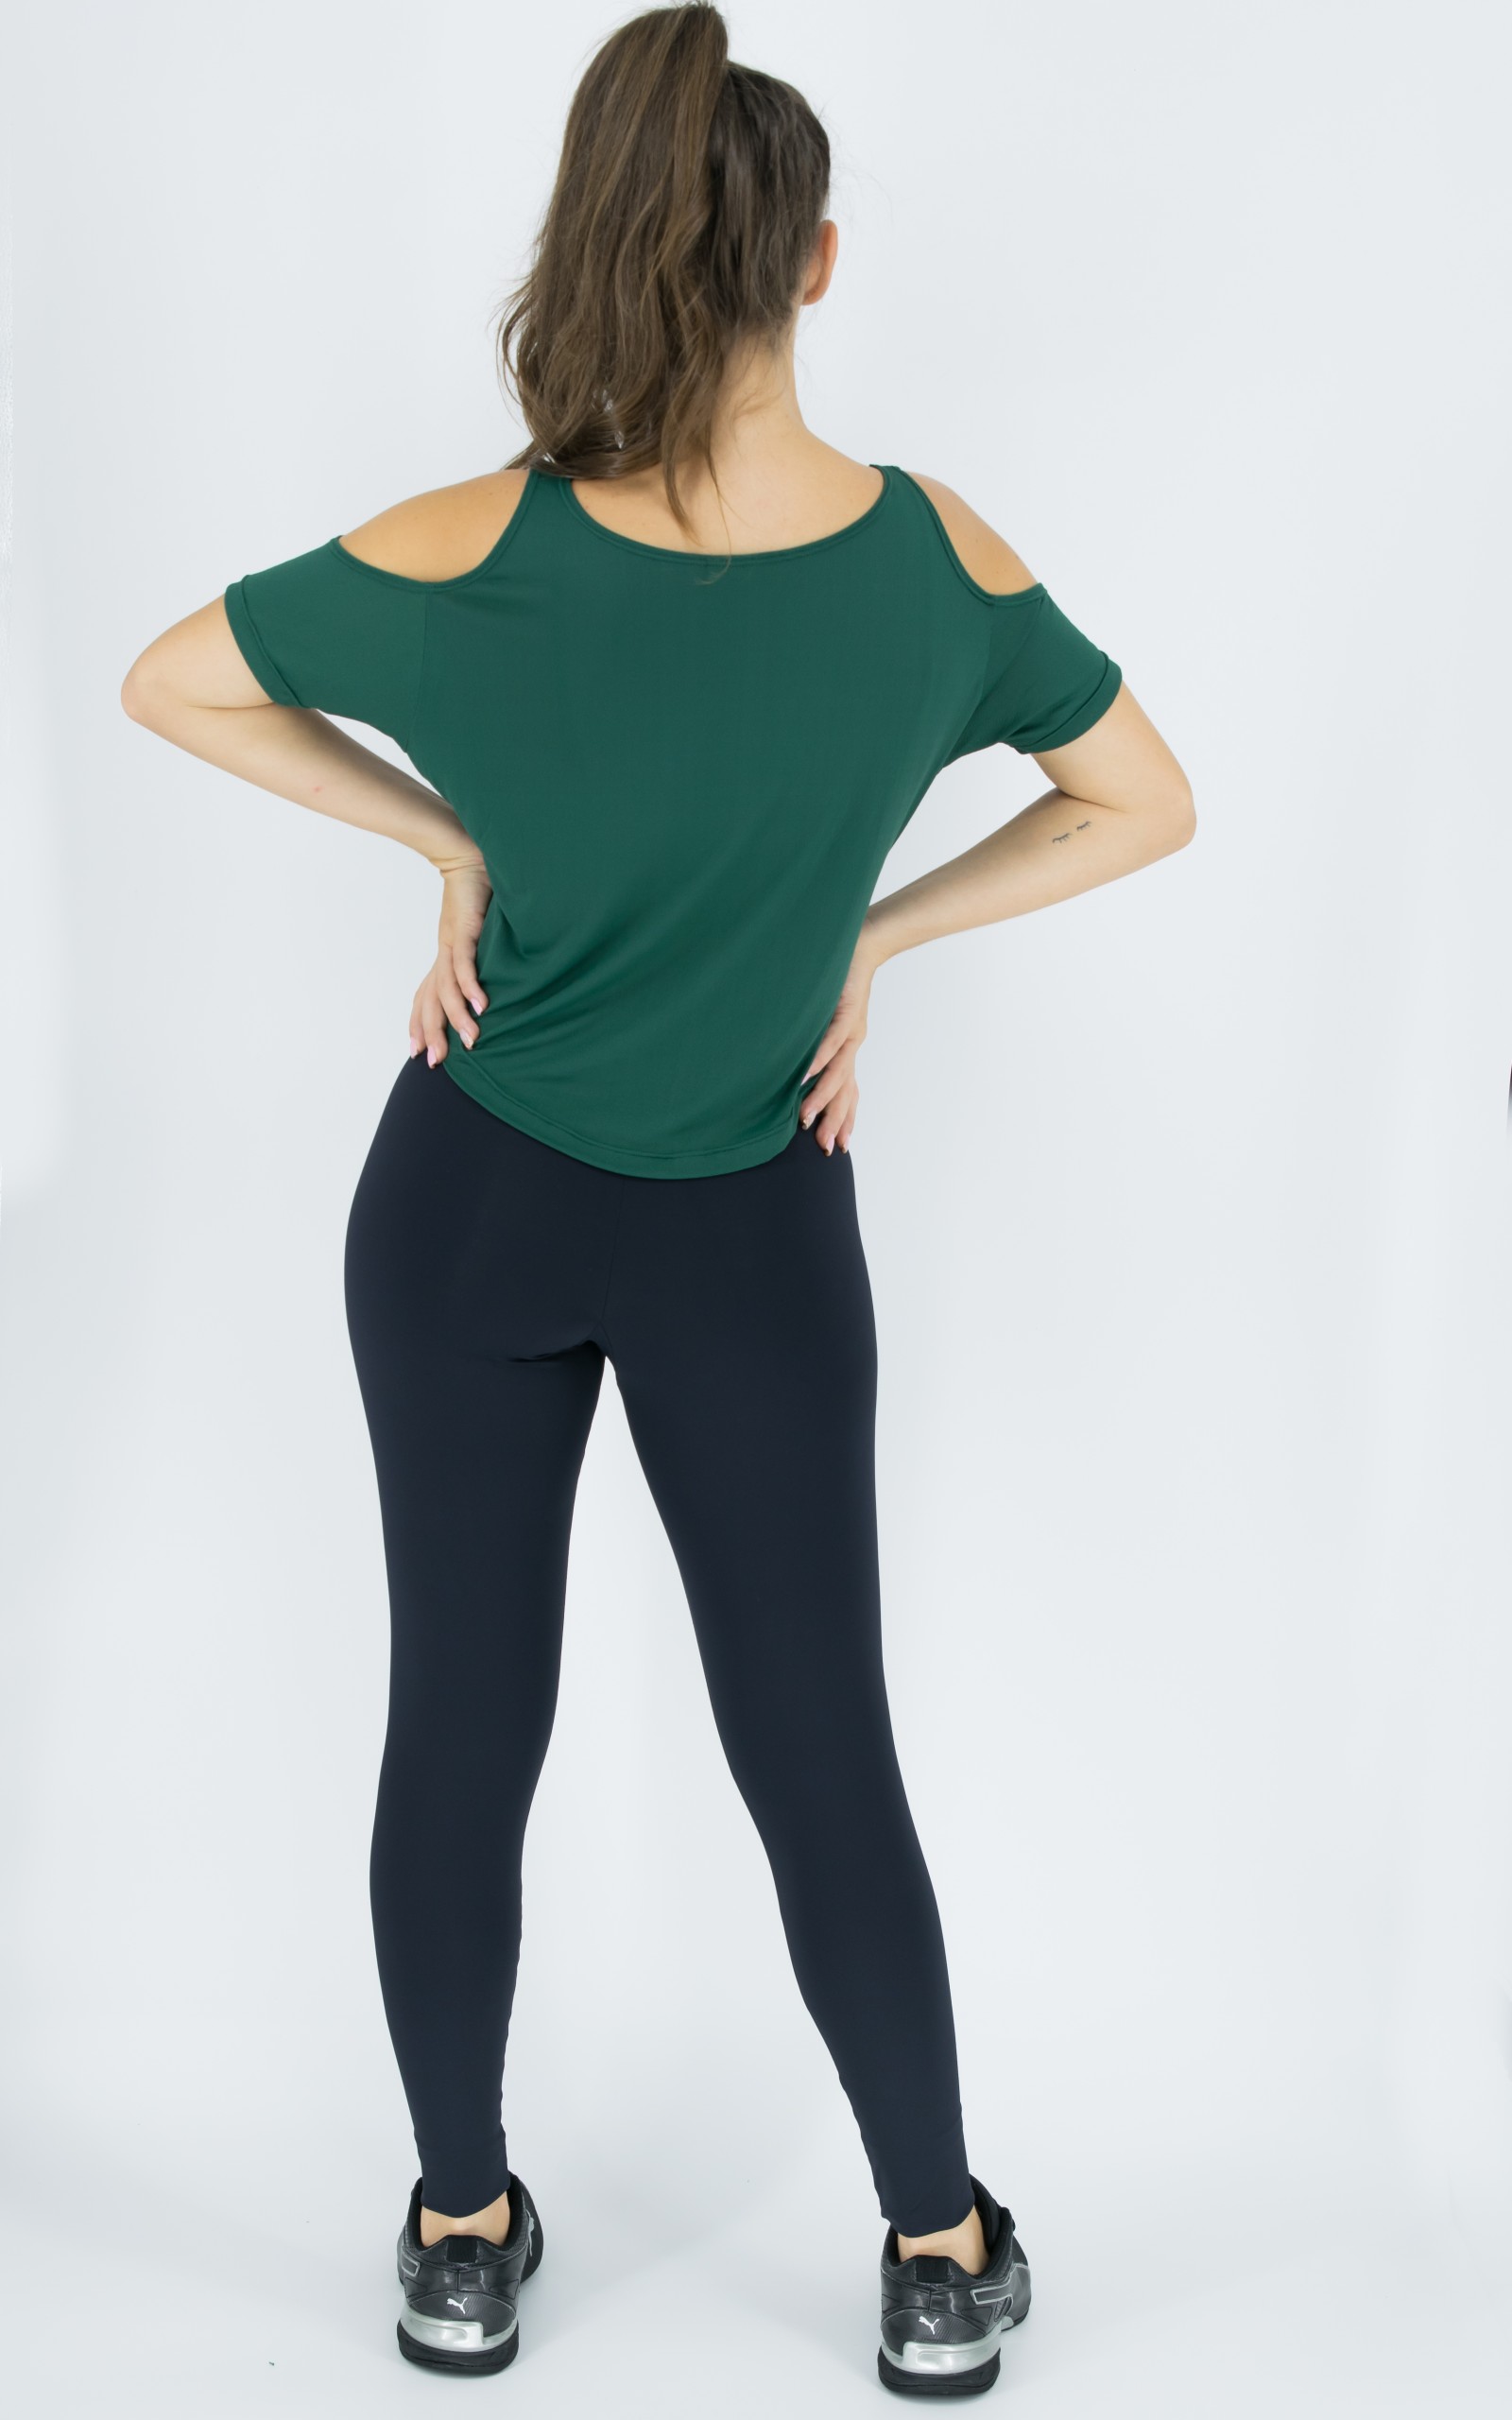 Blusa Like Verde, Coleção Move Your Body - NKT Fitwear Moda Fitness